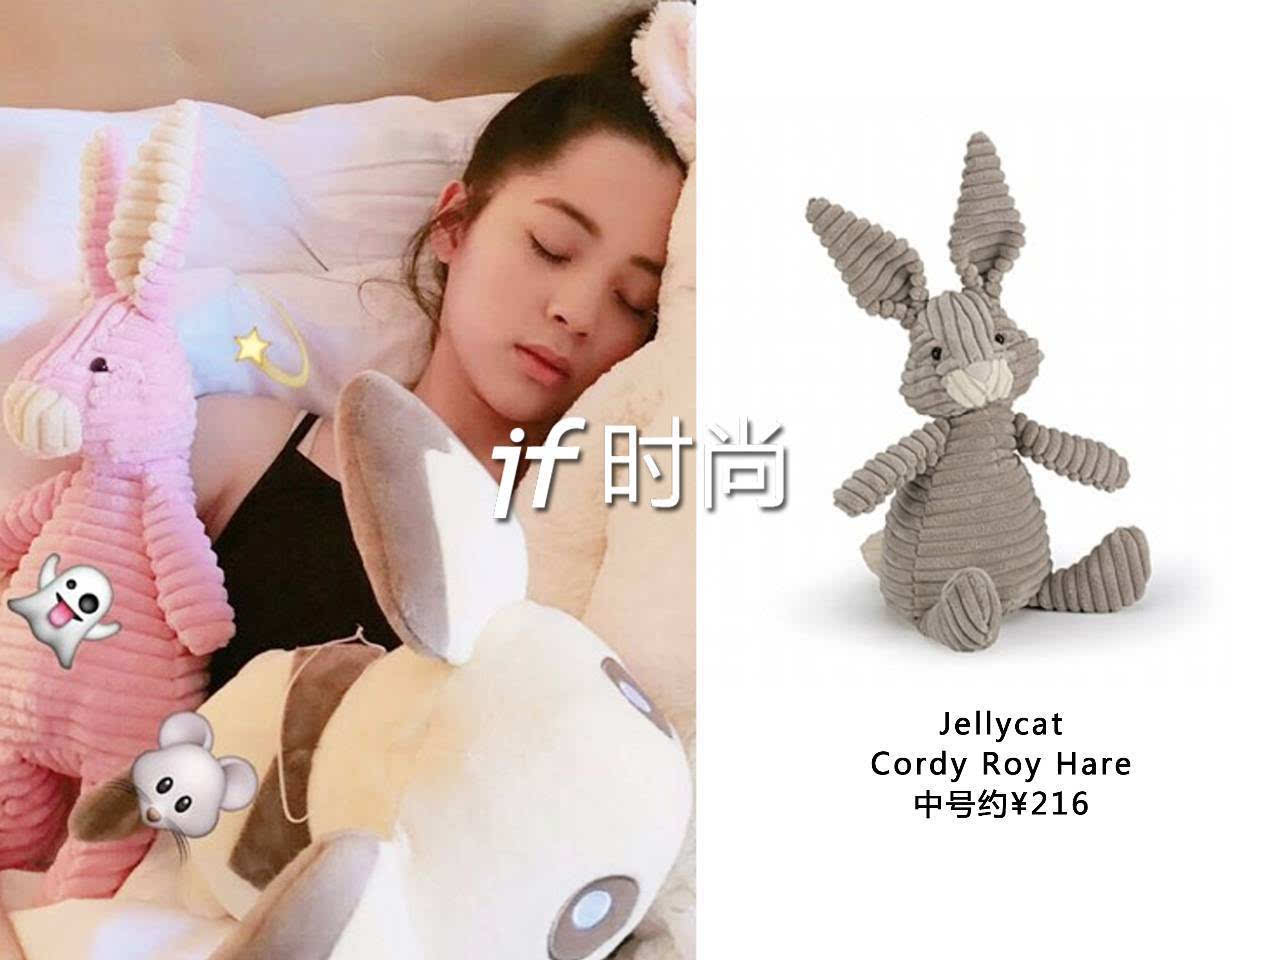 像欧阳娜娜抱着睡觉的粉粉兔,就也是bunny家族的一员.